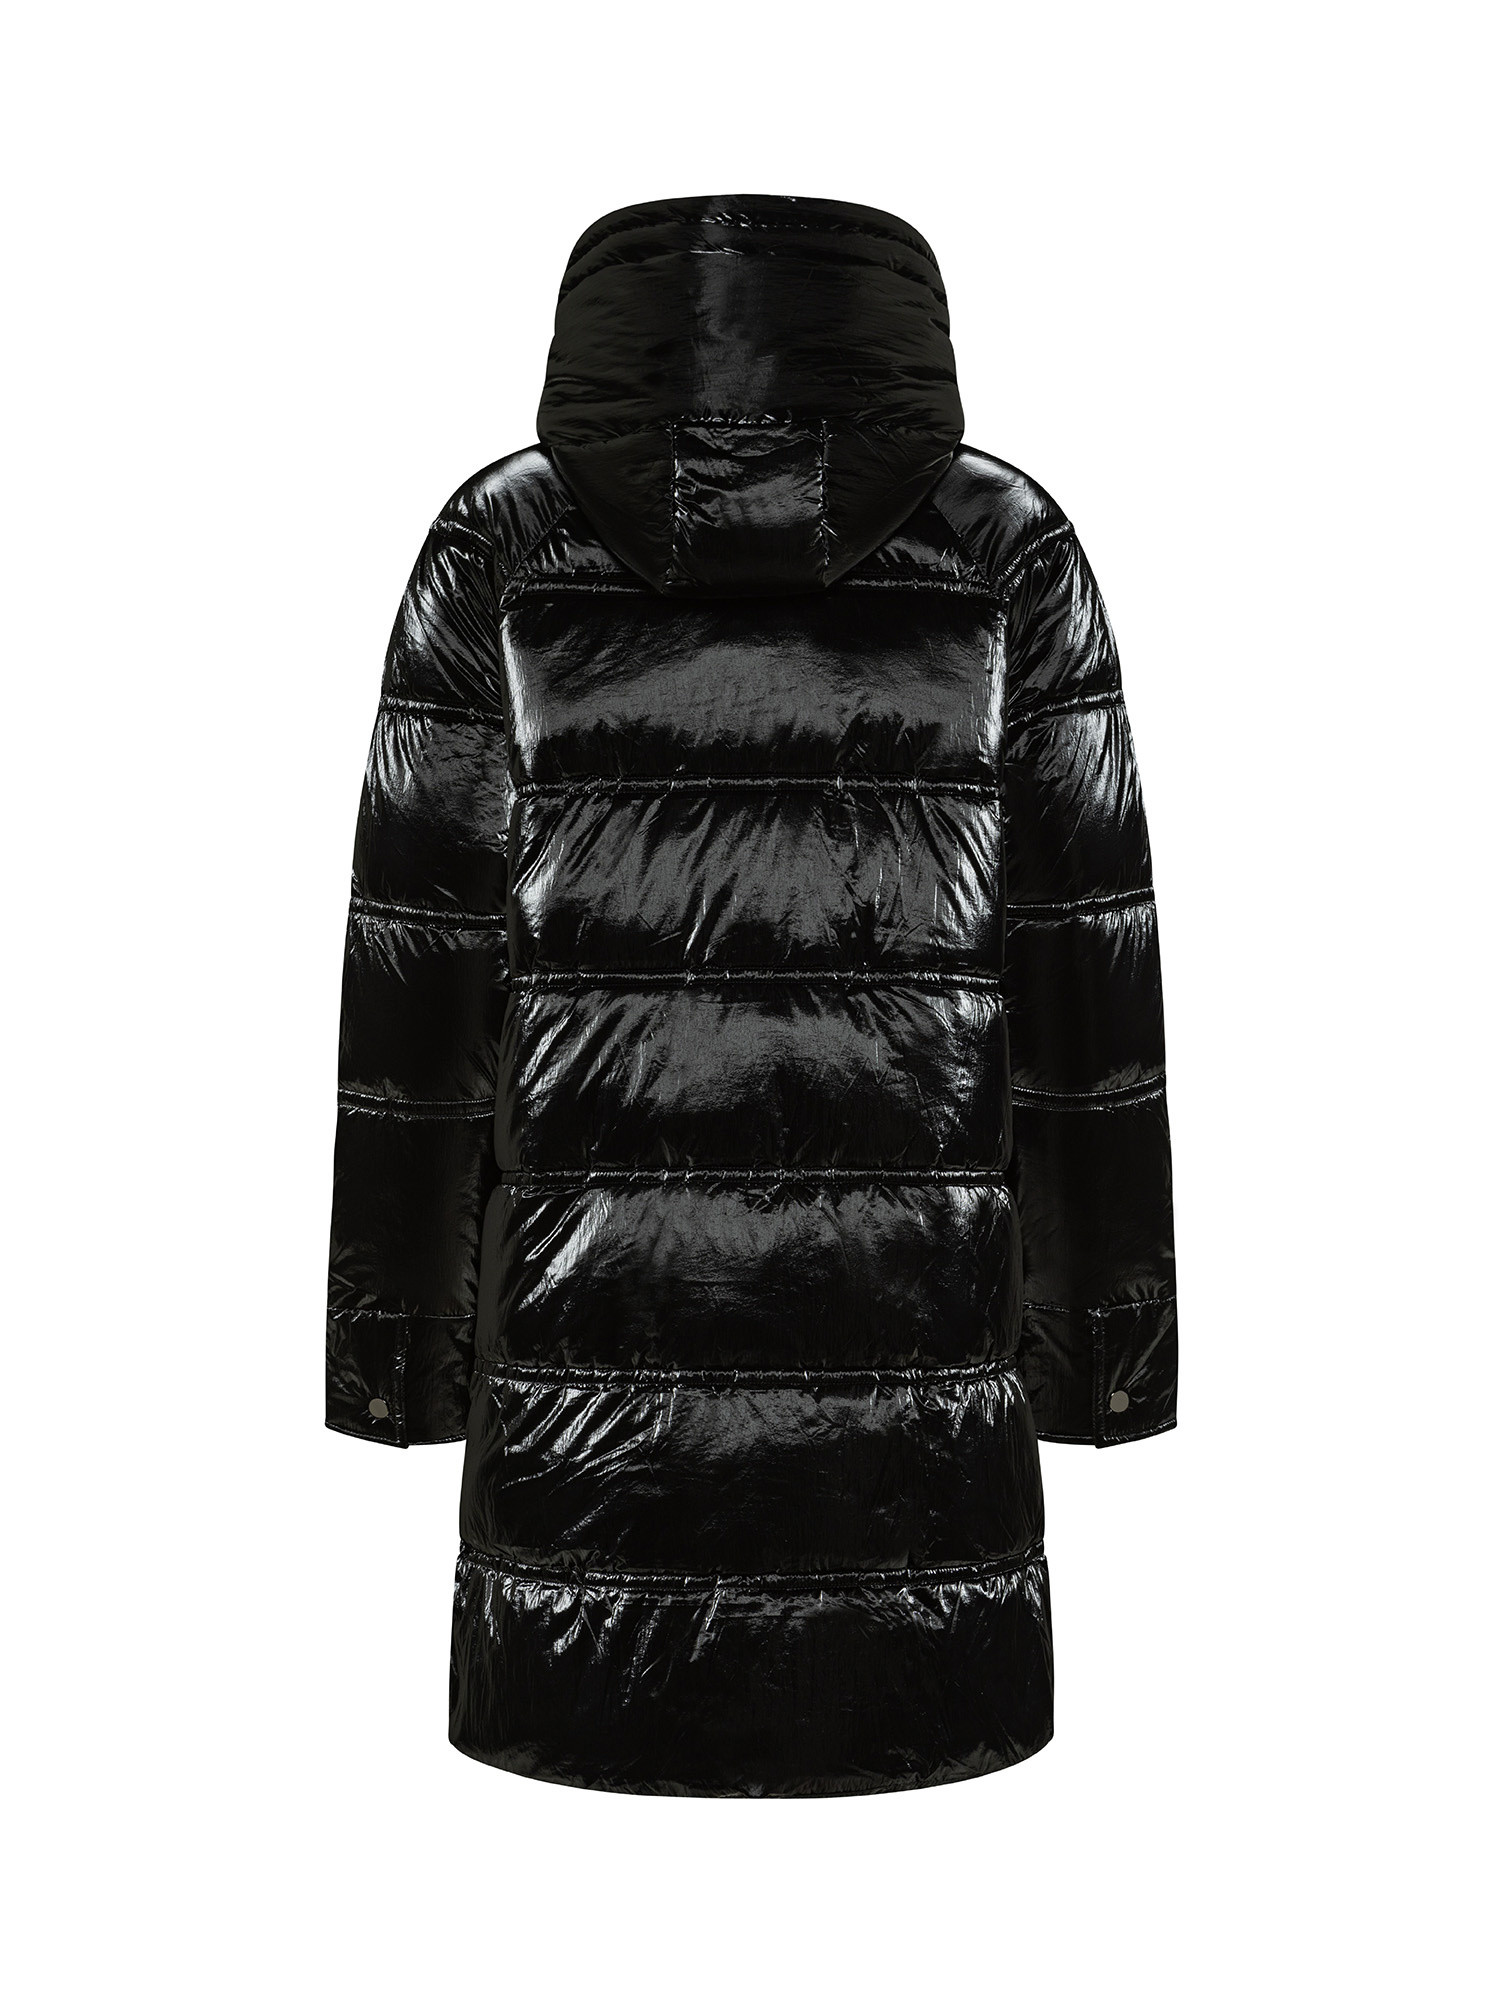 Koan - Shiny down jacket, Black, large image number 1